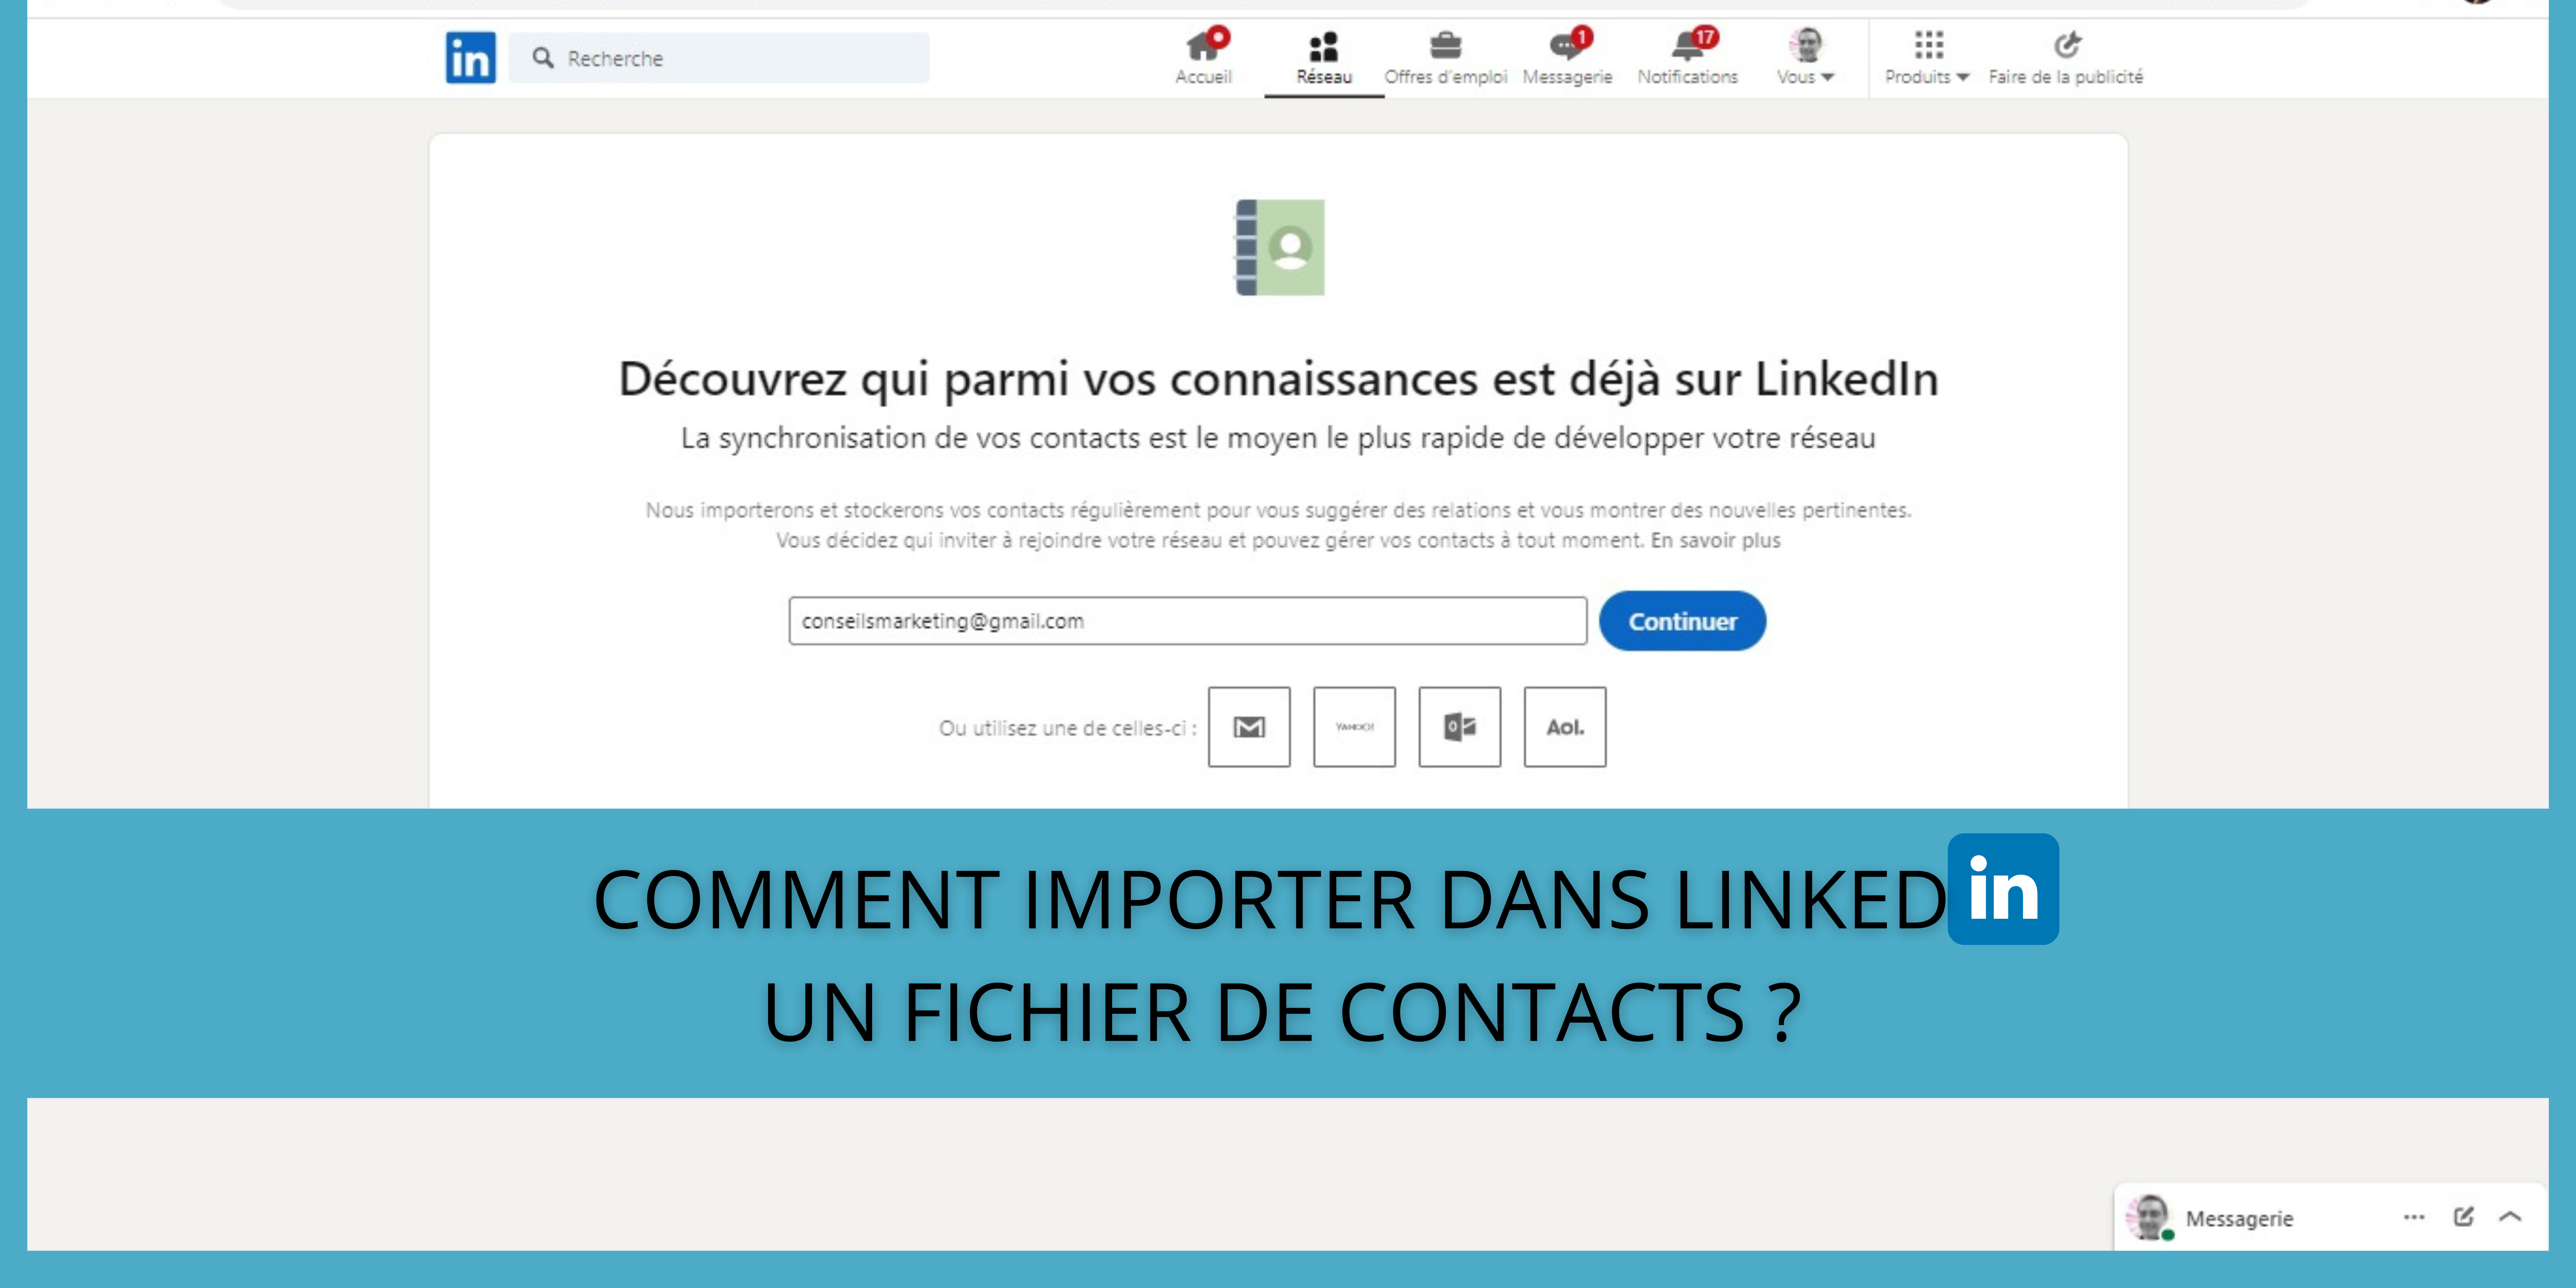 Comment importer dans LinkedIn un fichier de contacts ? 23